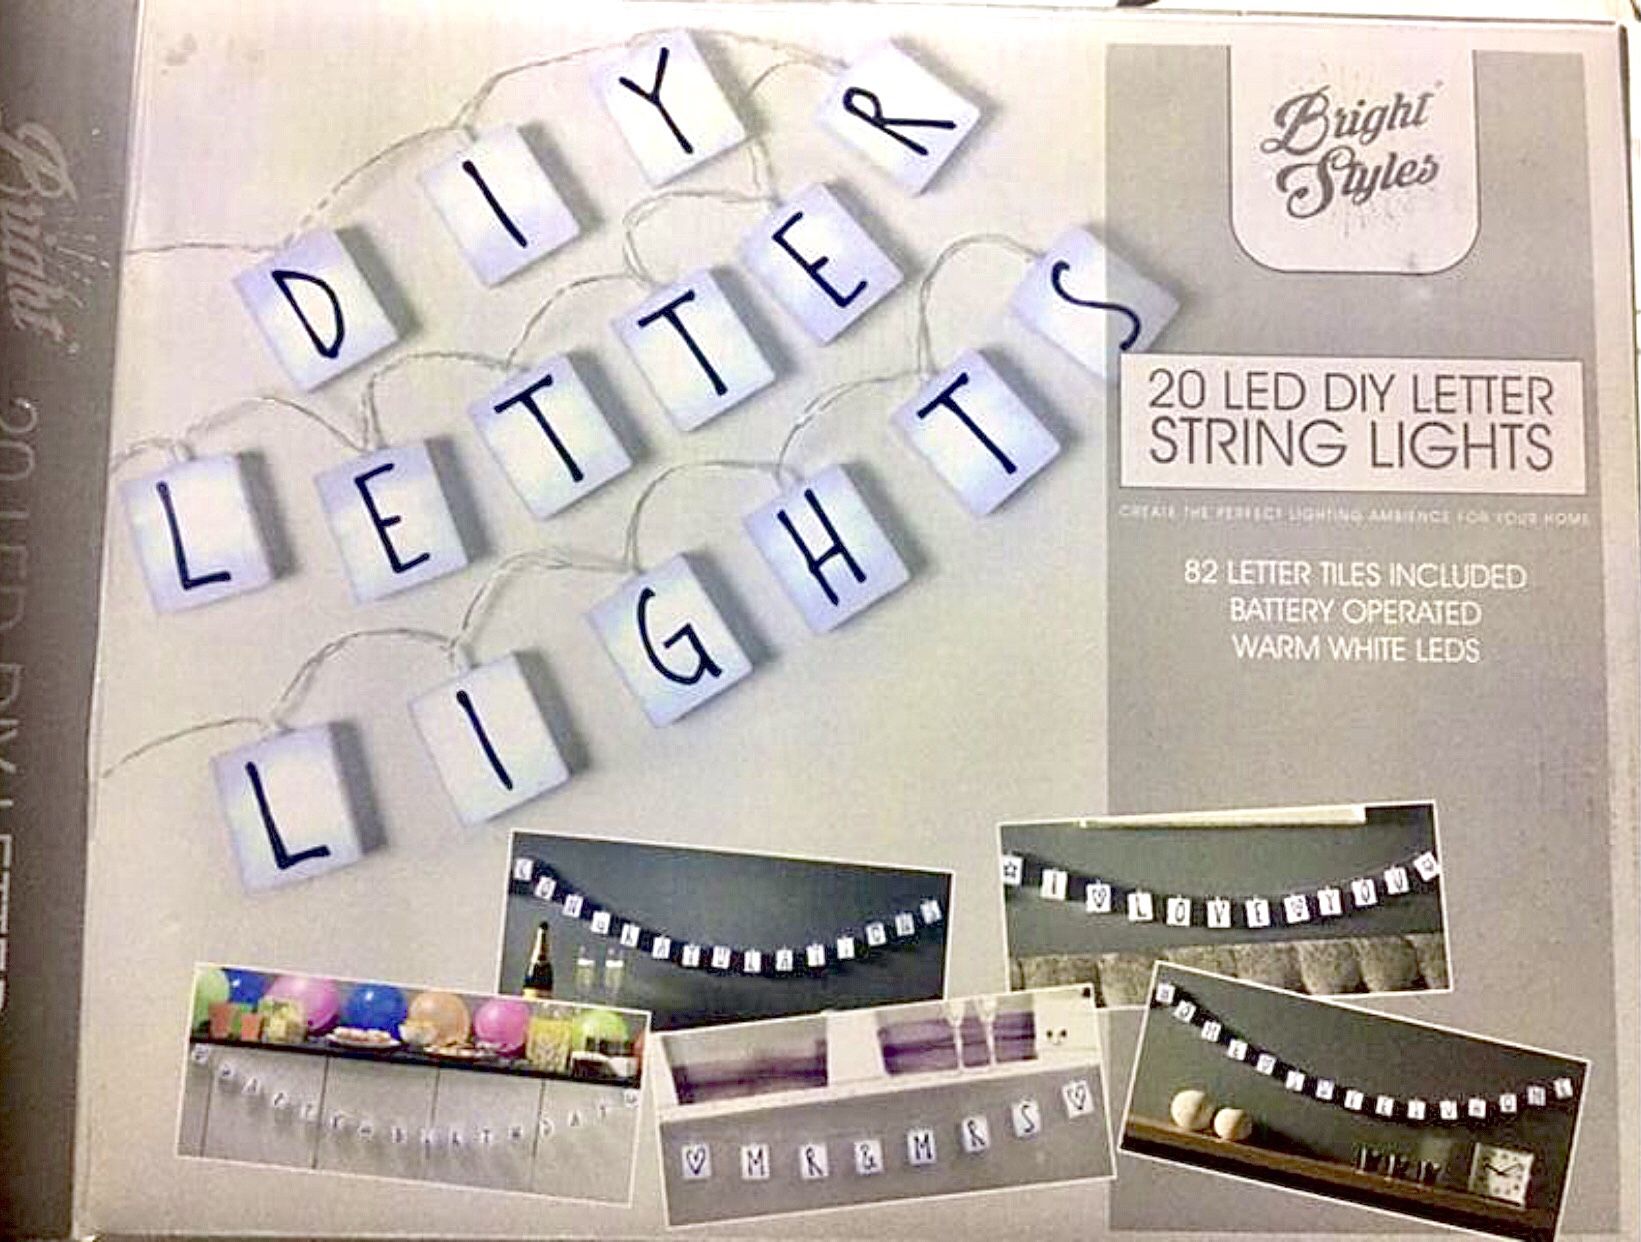 20 LED DIY letter string lights